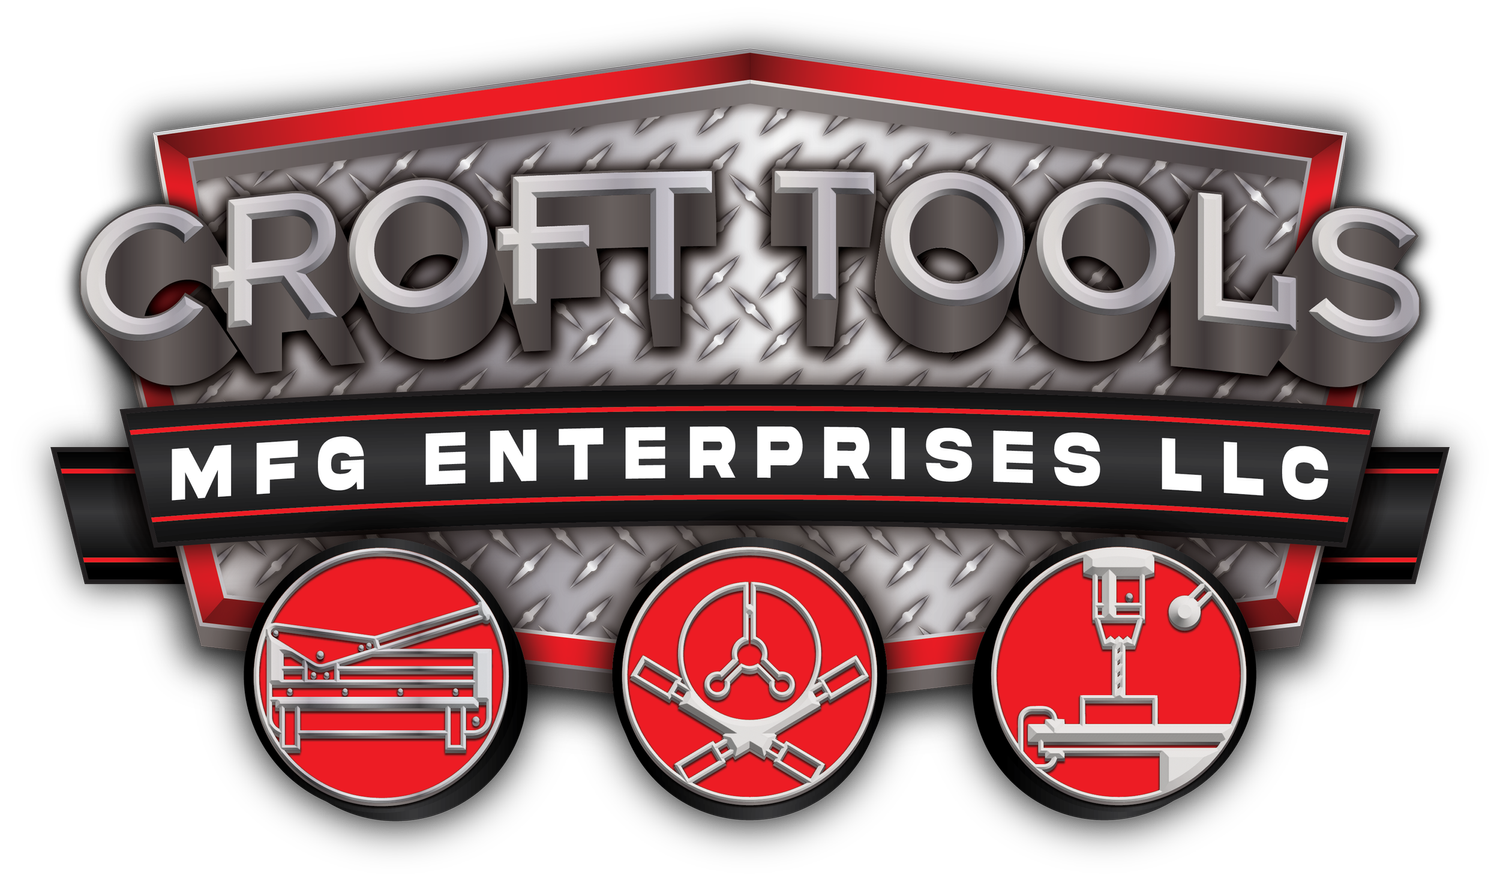 Croft Tools MFG Enterprises LLC